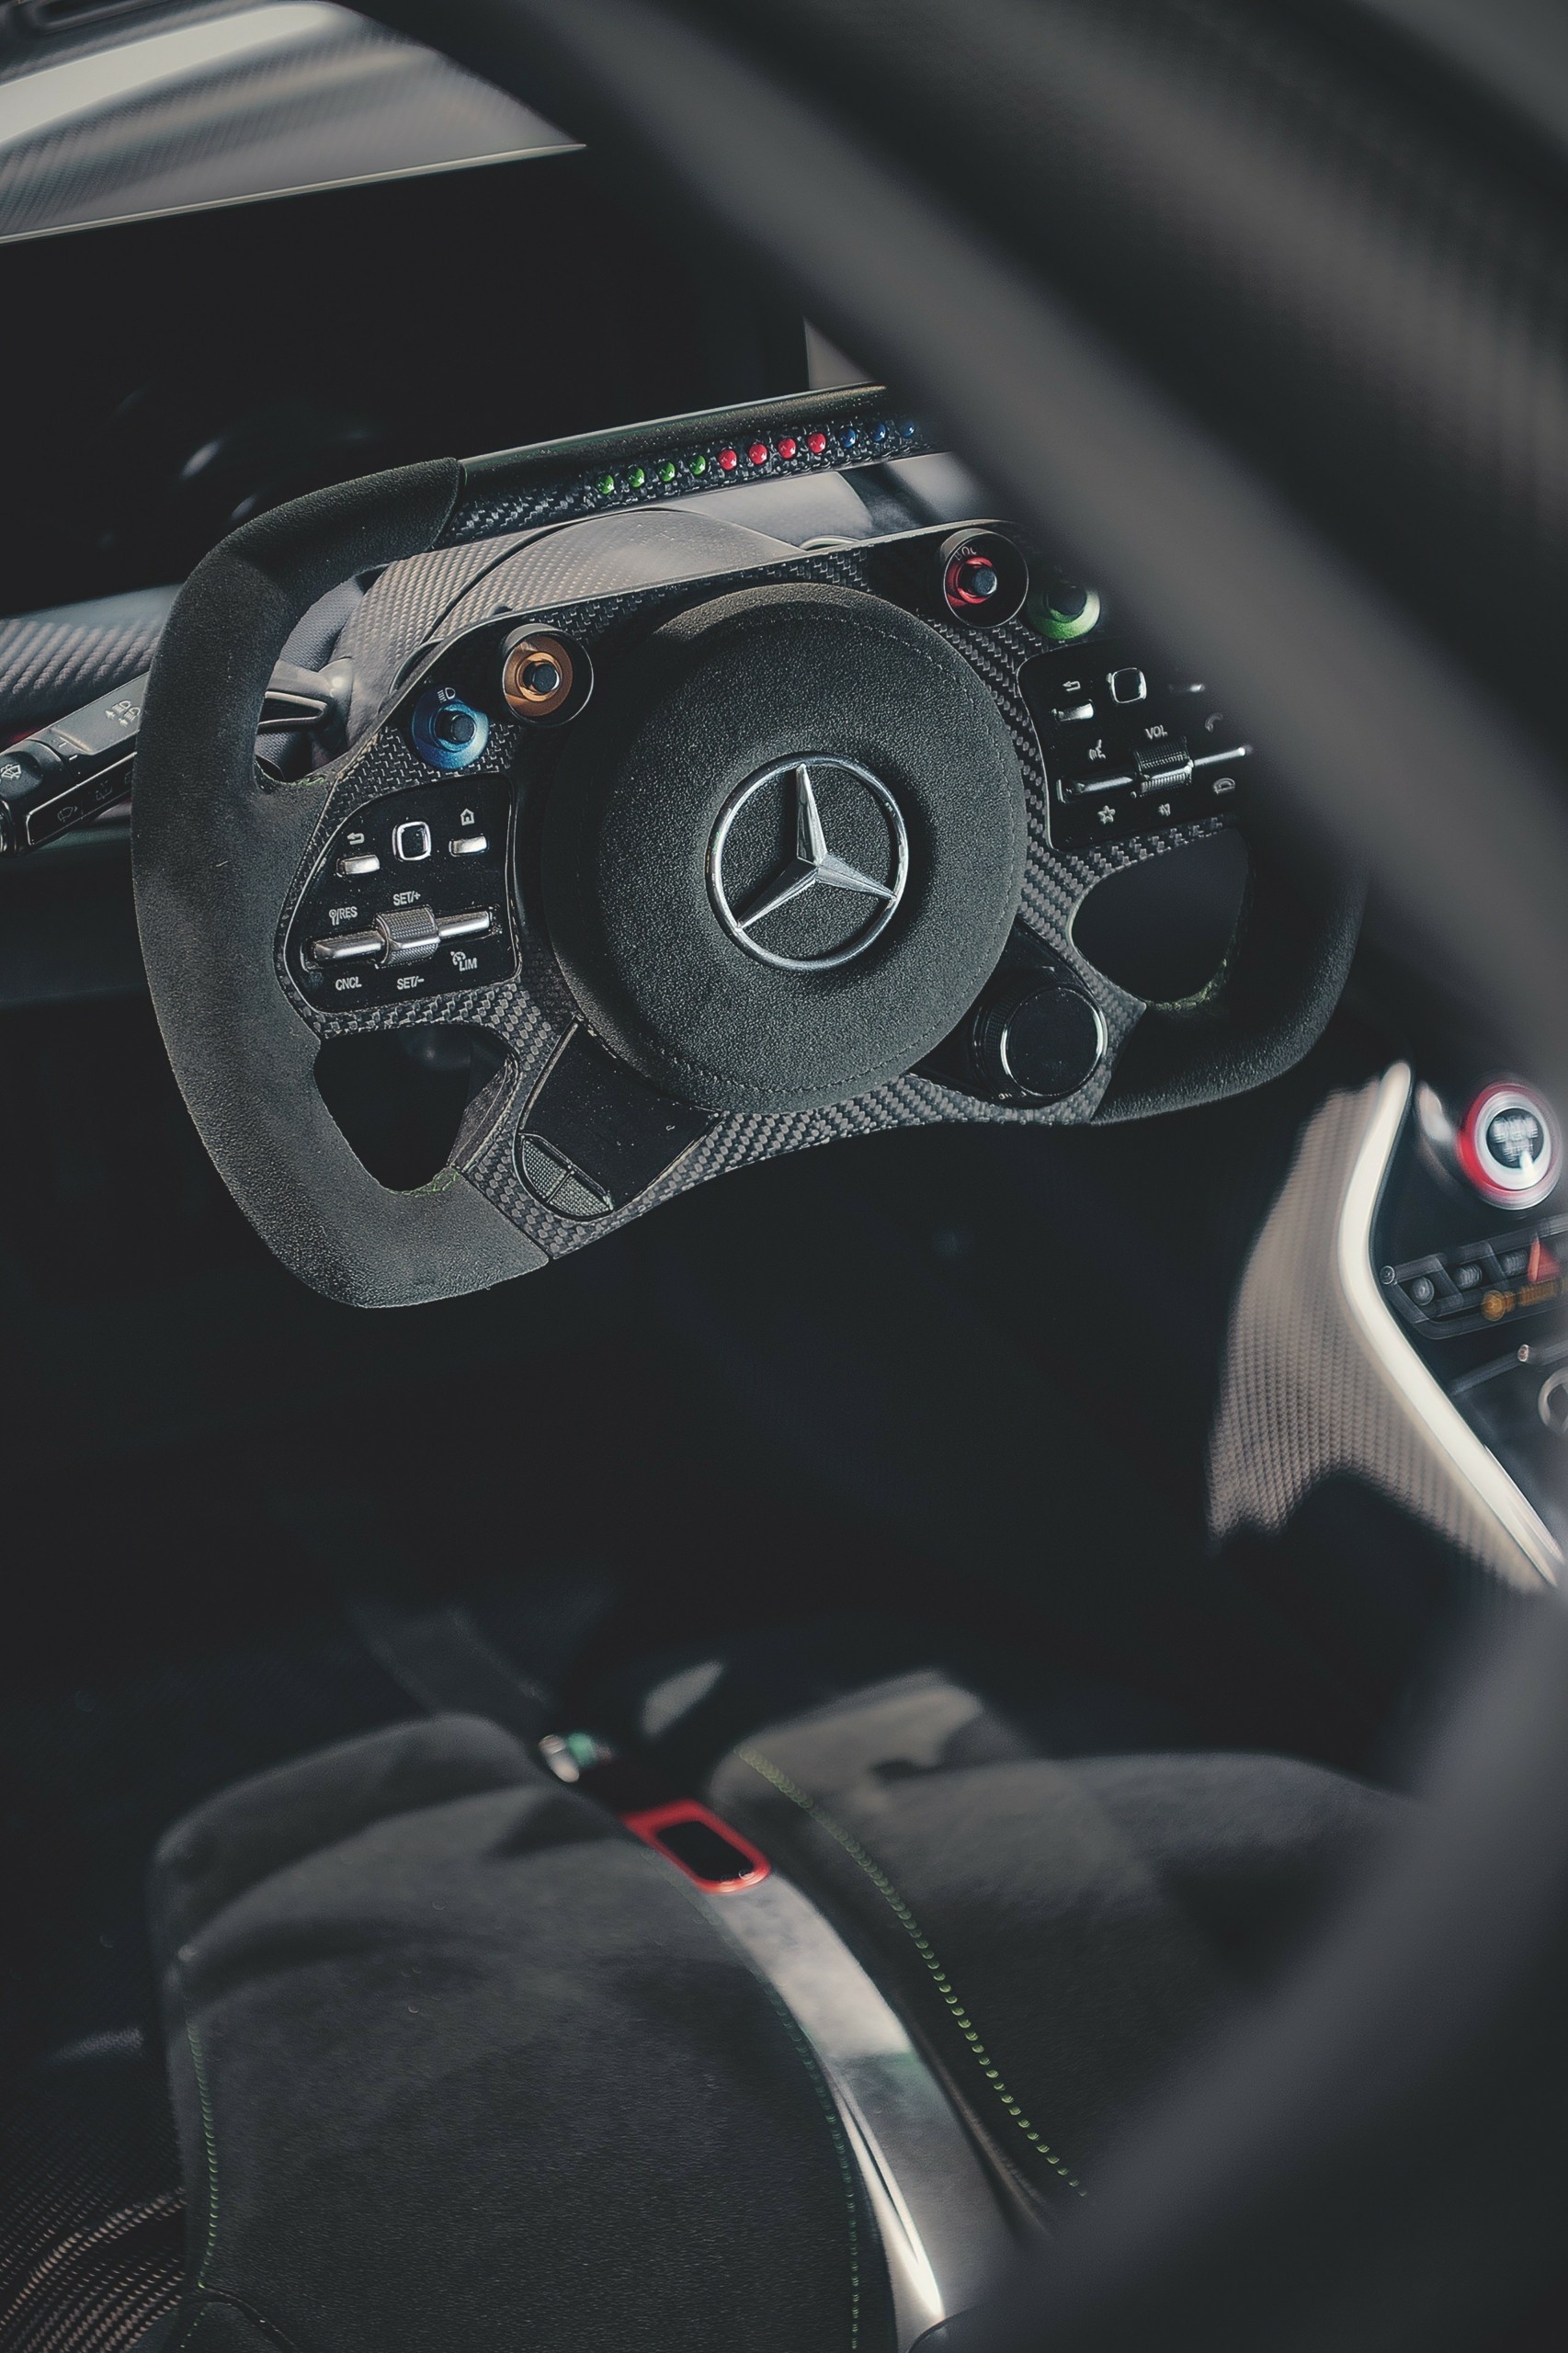 Το εξωγήινο Mercedes-AMG One των 3 εκατομμυρίων ευρώ με τη μυστική λίστα των 275 αγοραστών της είναι sold-out